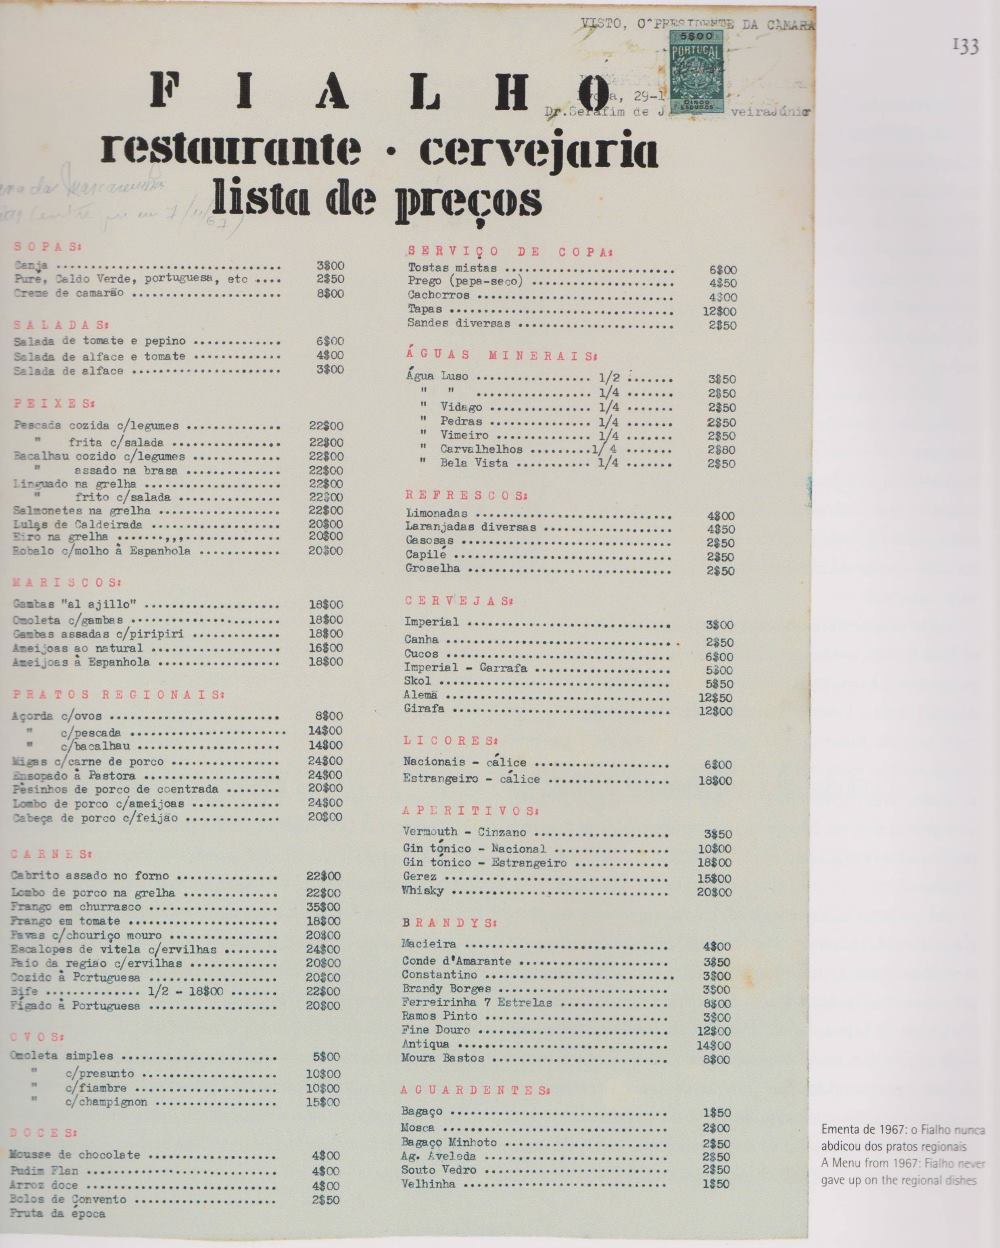 Ementa 1967 Restaurante Fialho